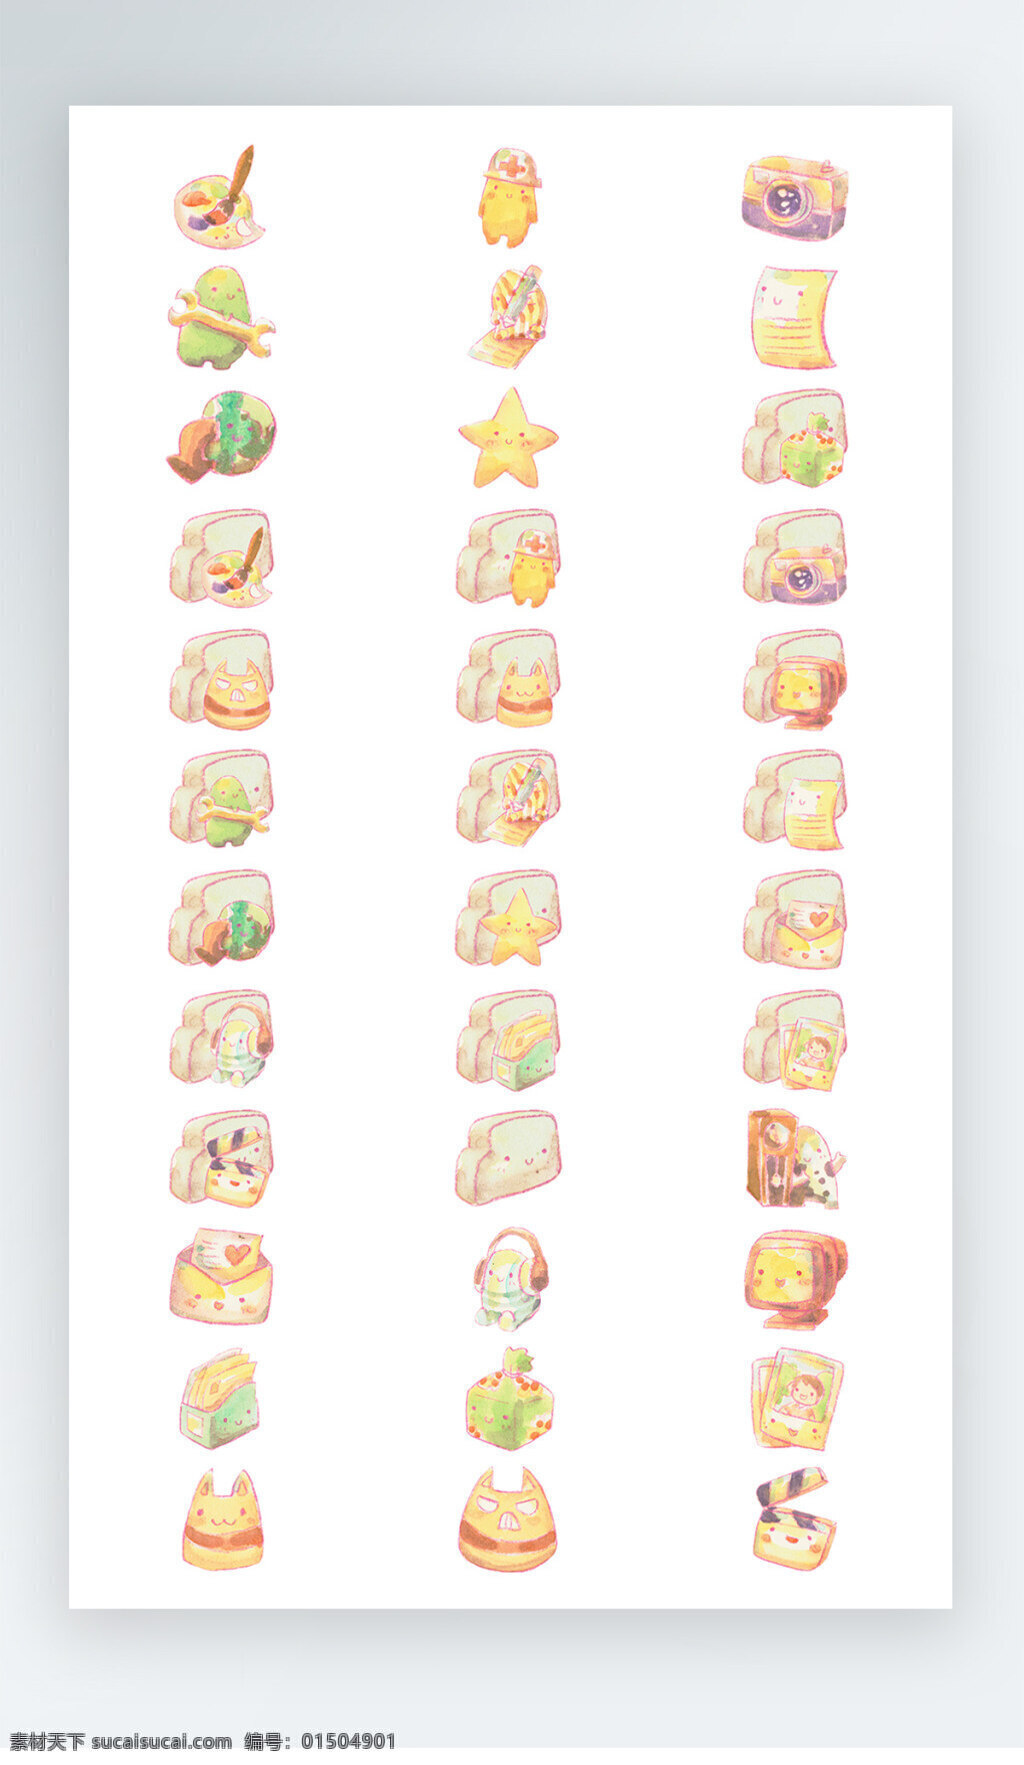 食物 图标 彩色 写实 图标素材 食物图标 面包图标